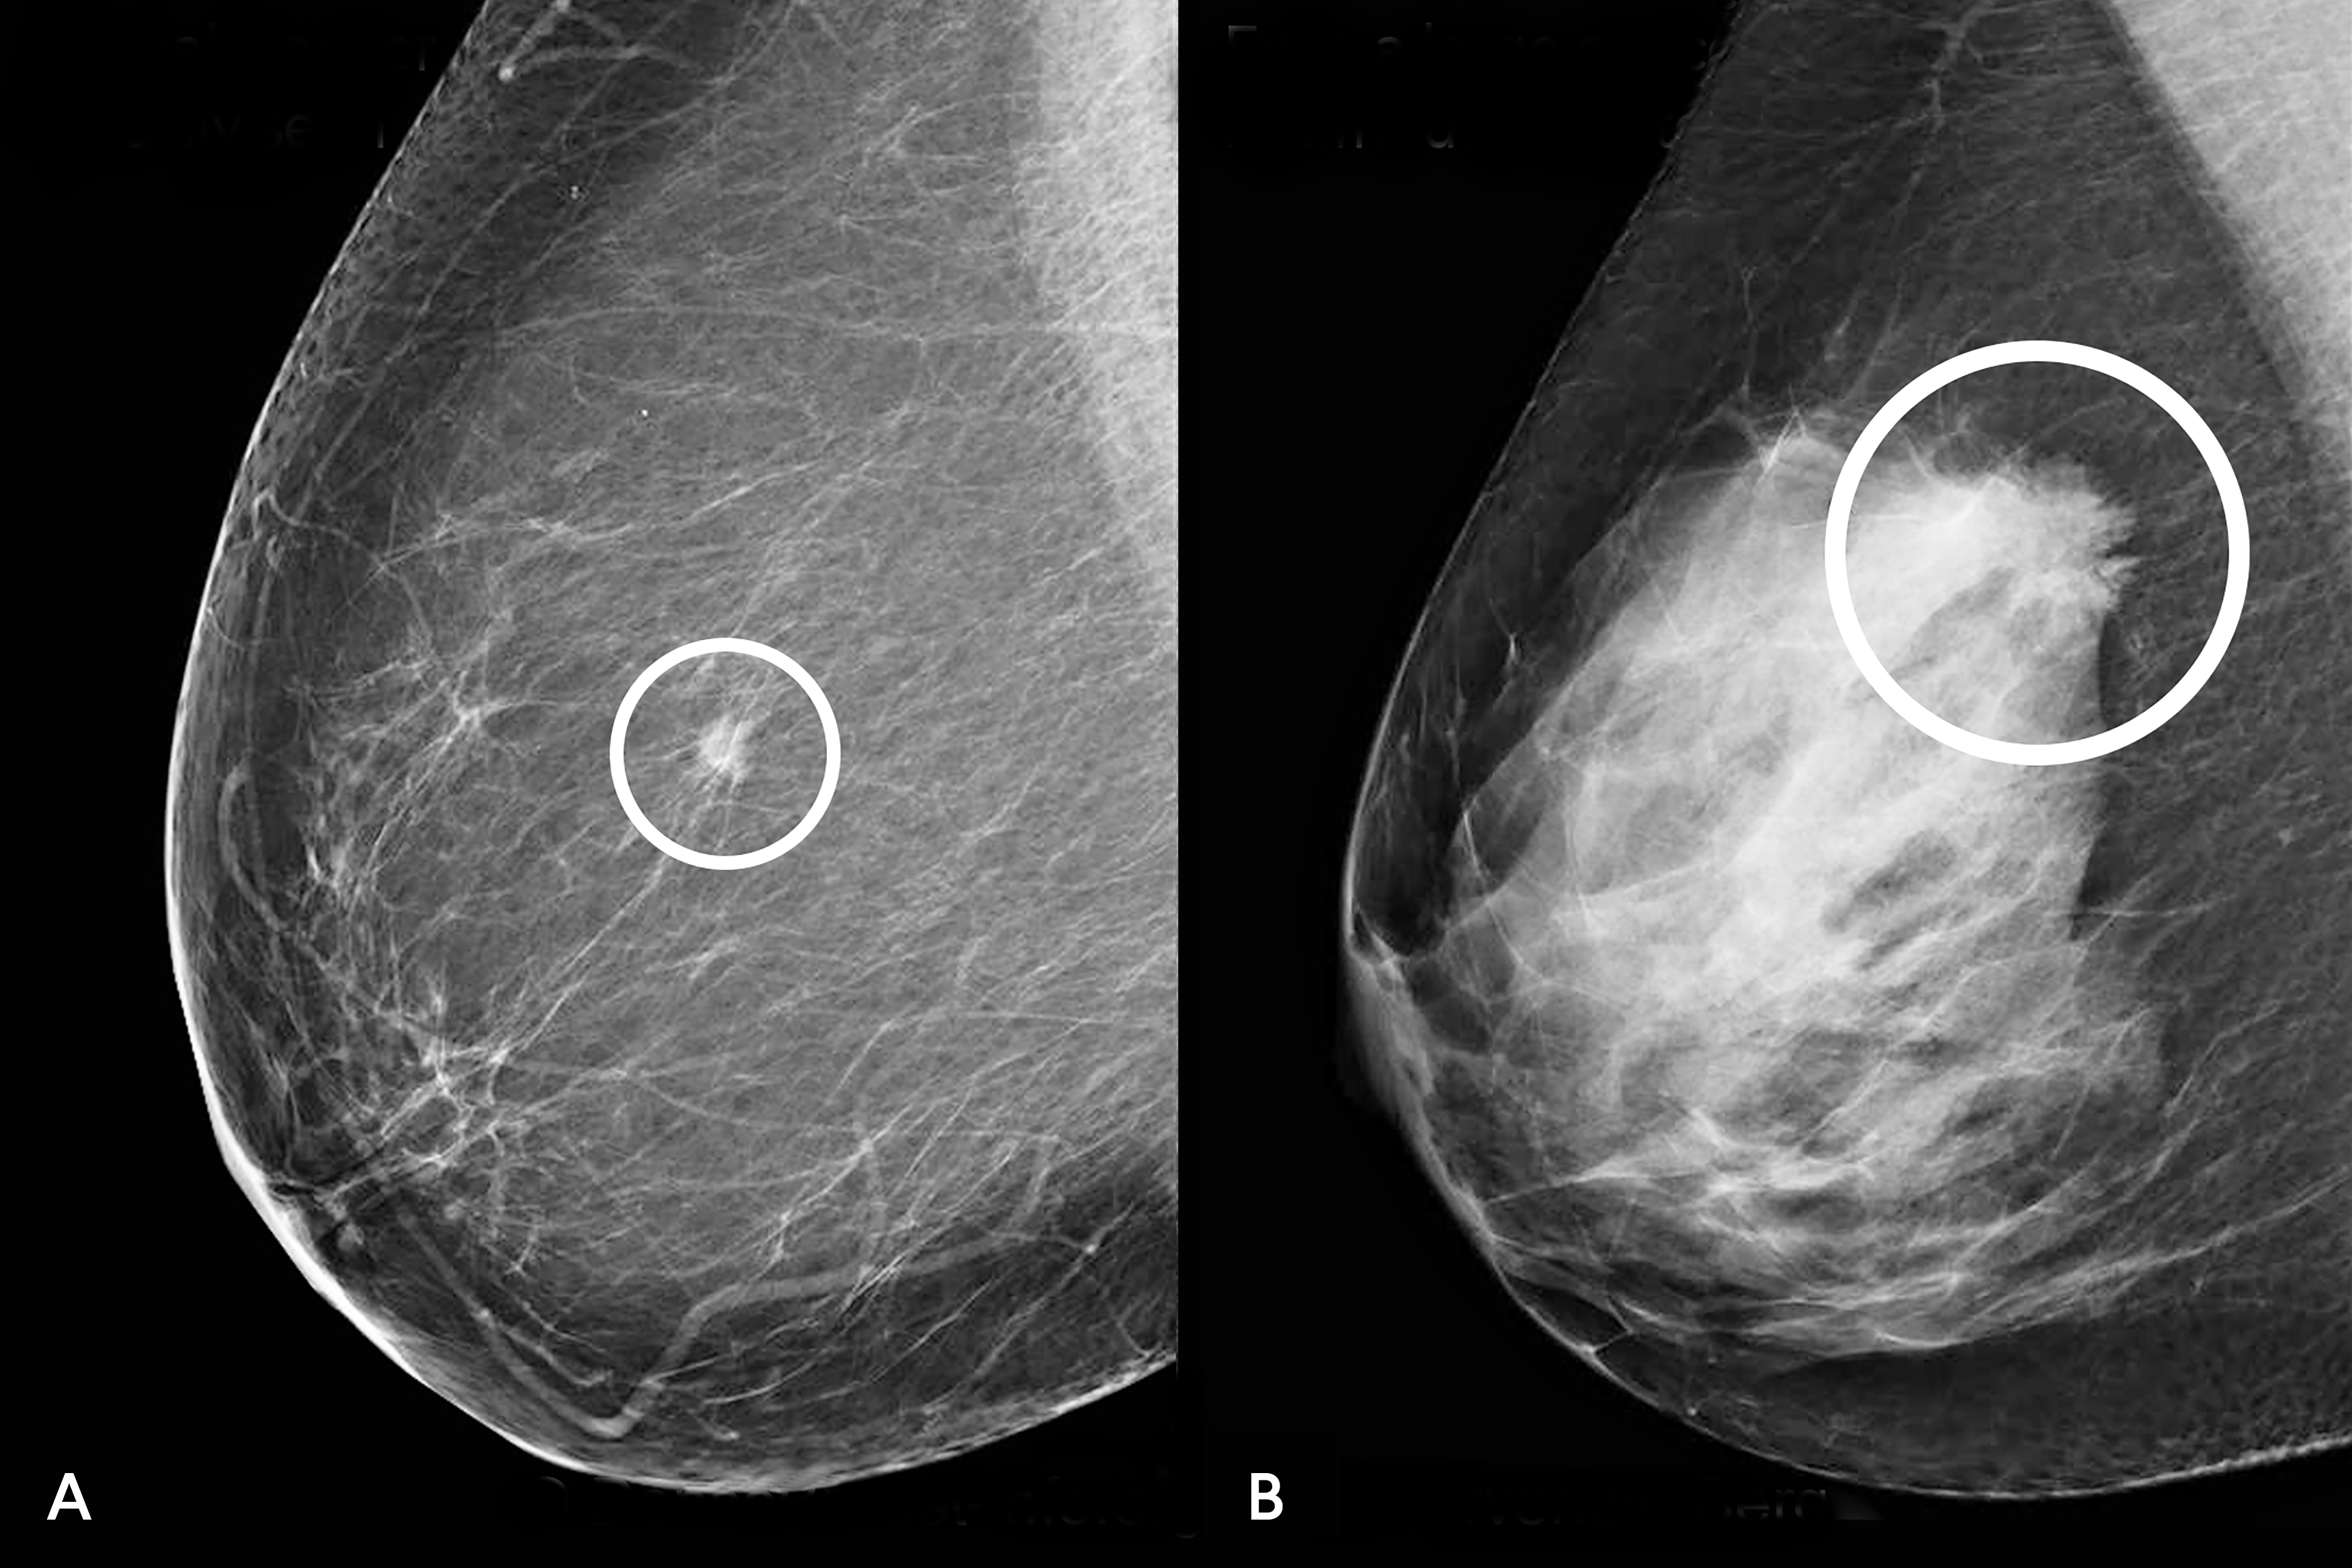 A tumor in a fatty breast vs. a dense breast